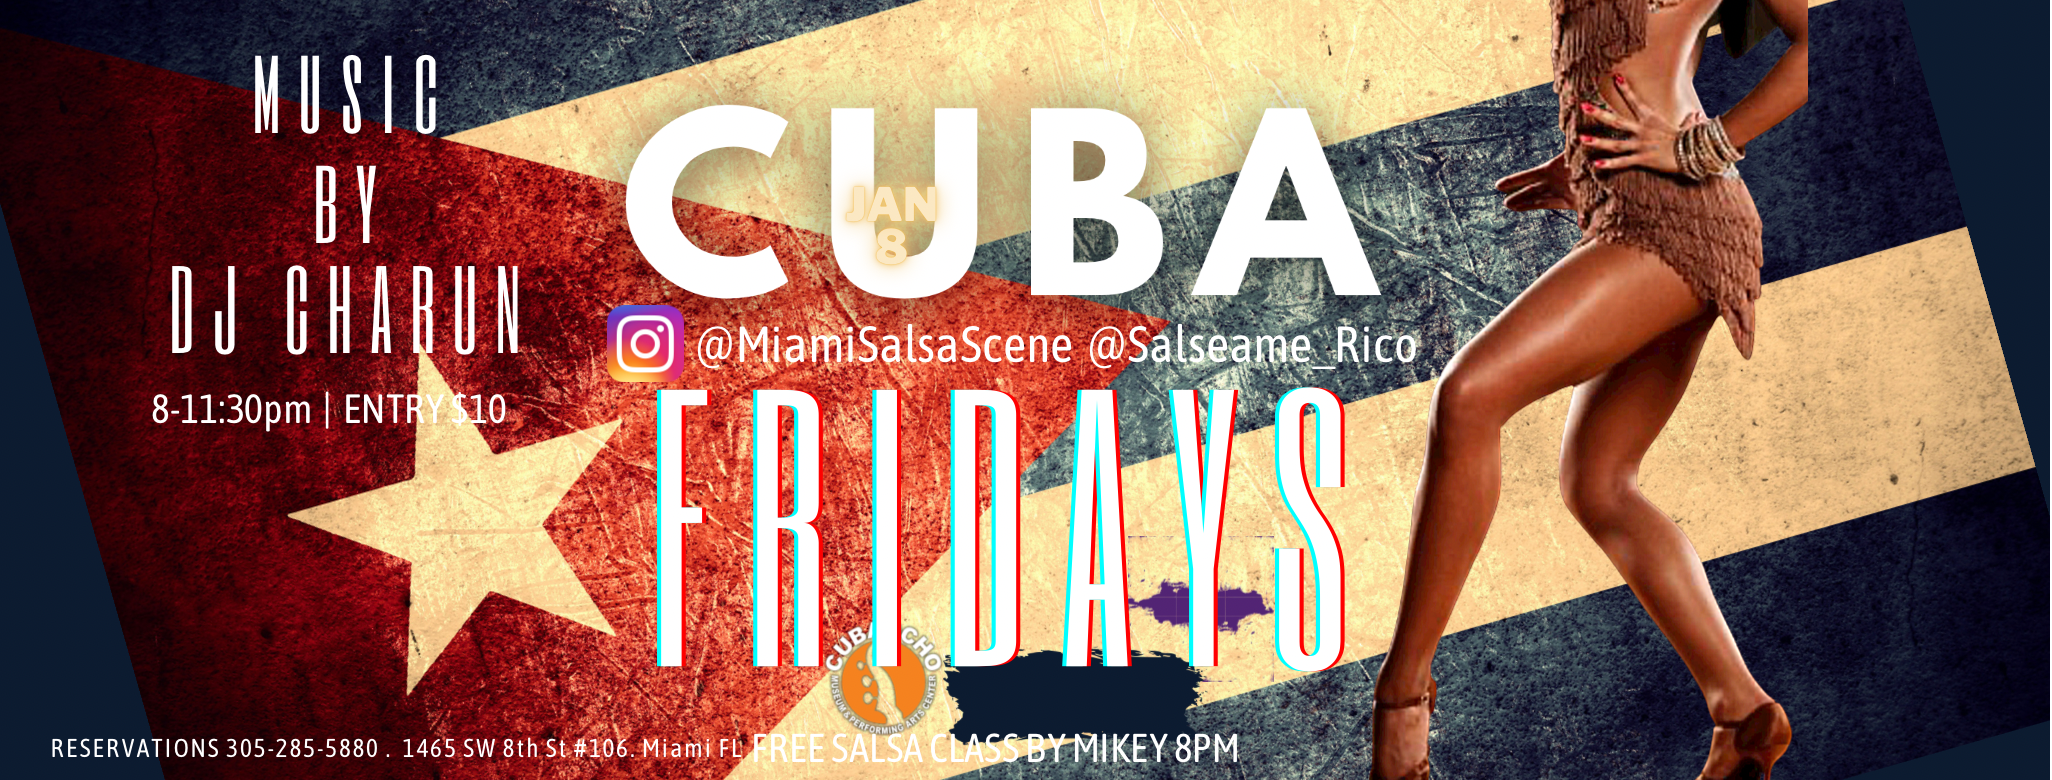 CUBA Fridays at Cubaocho feat Dj Charun